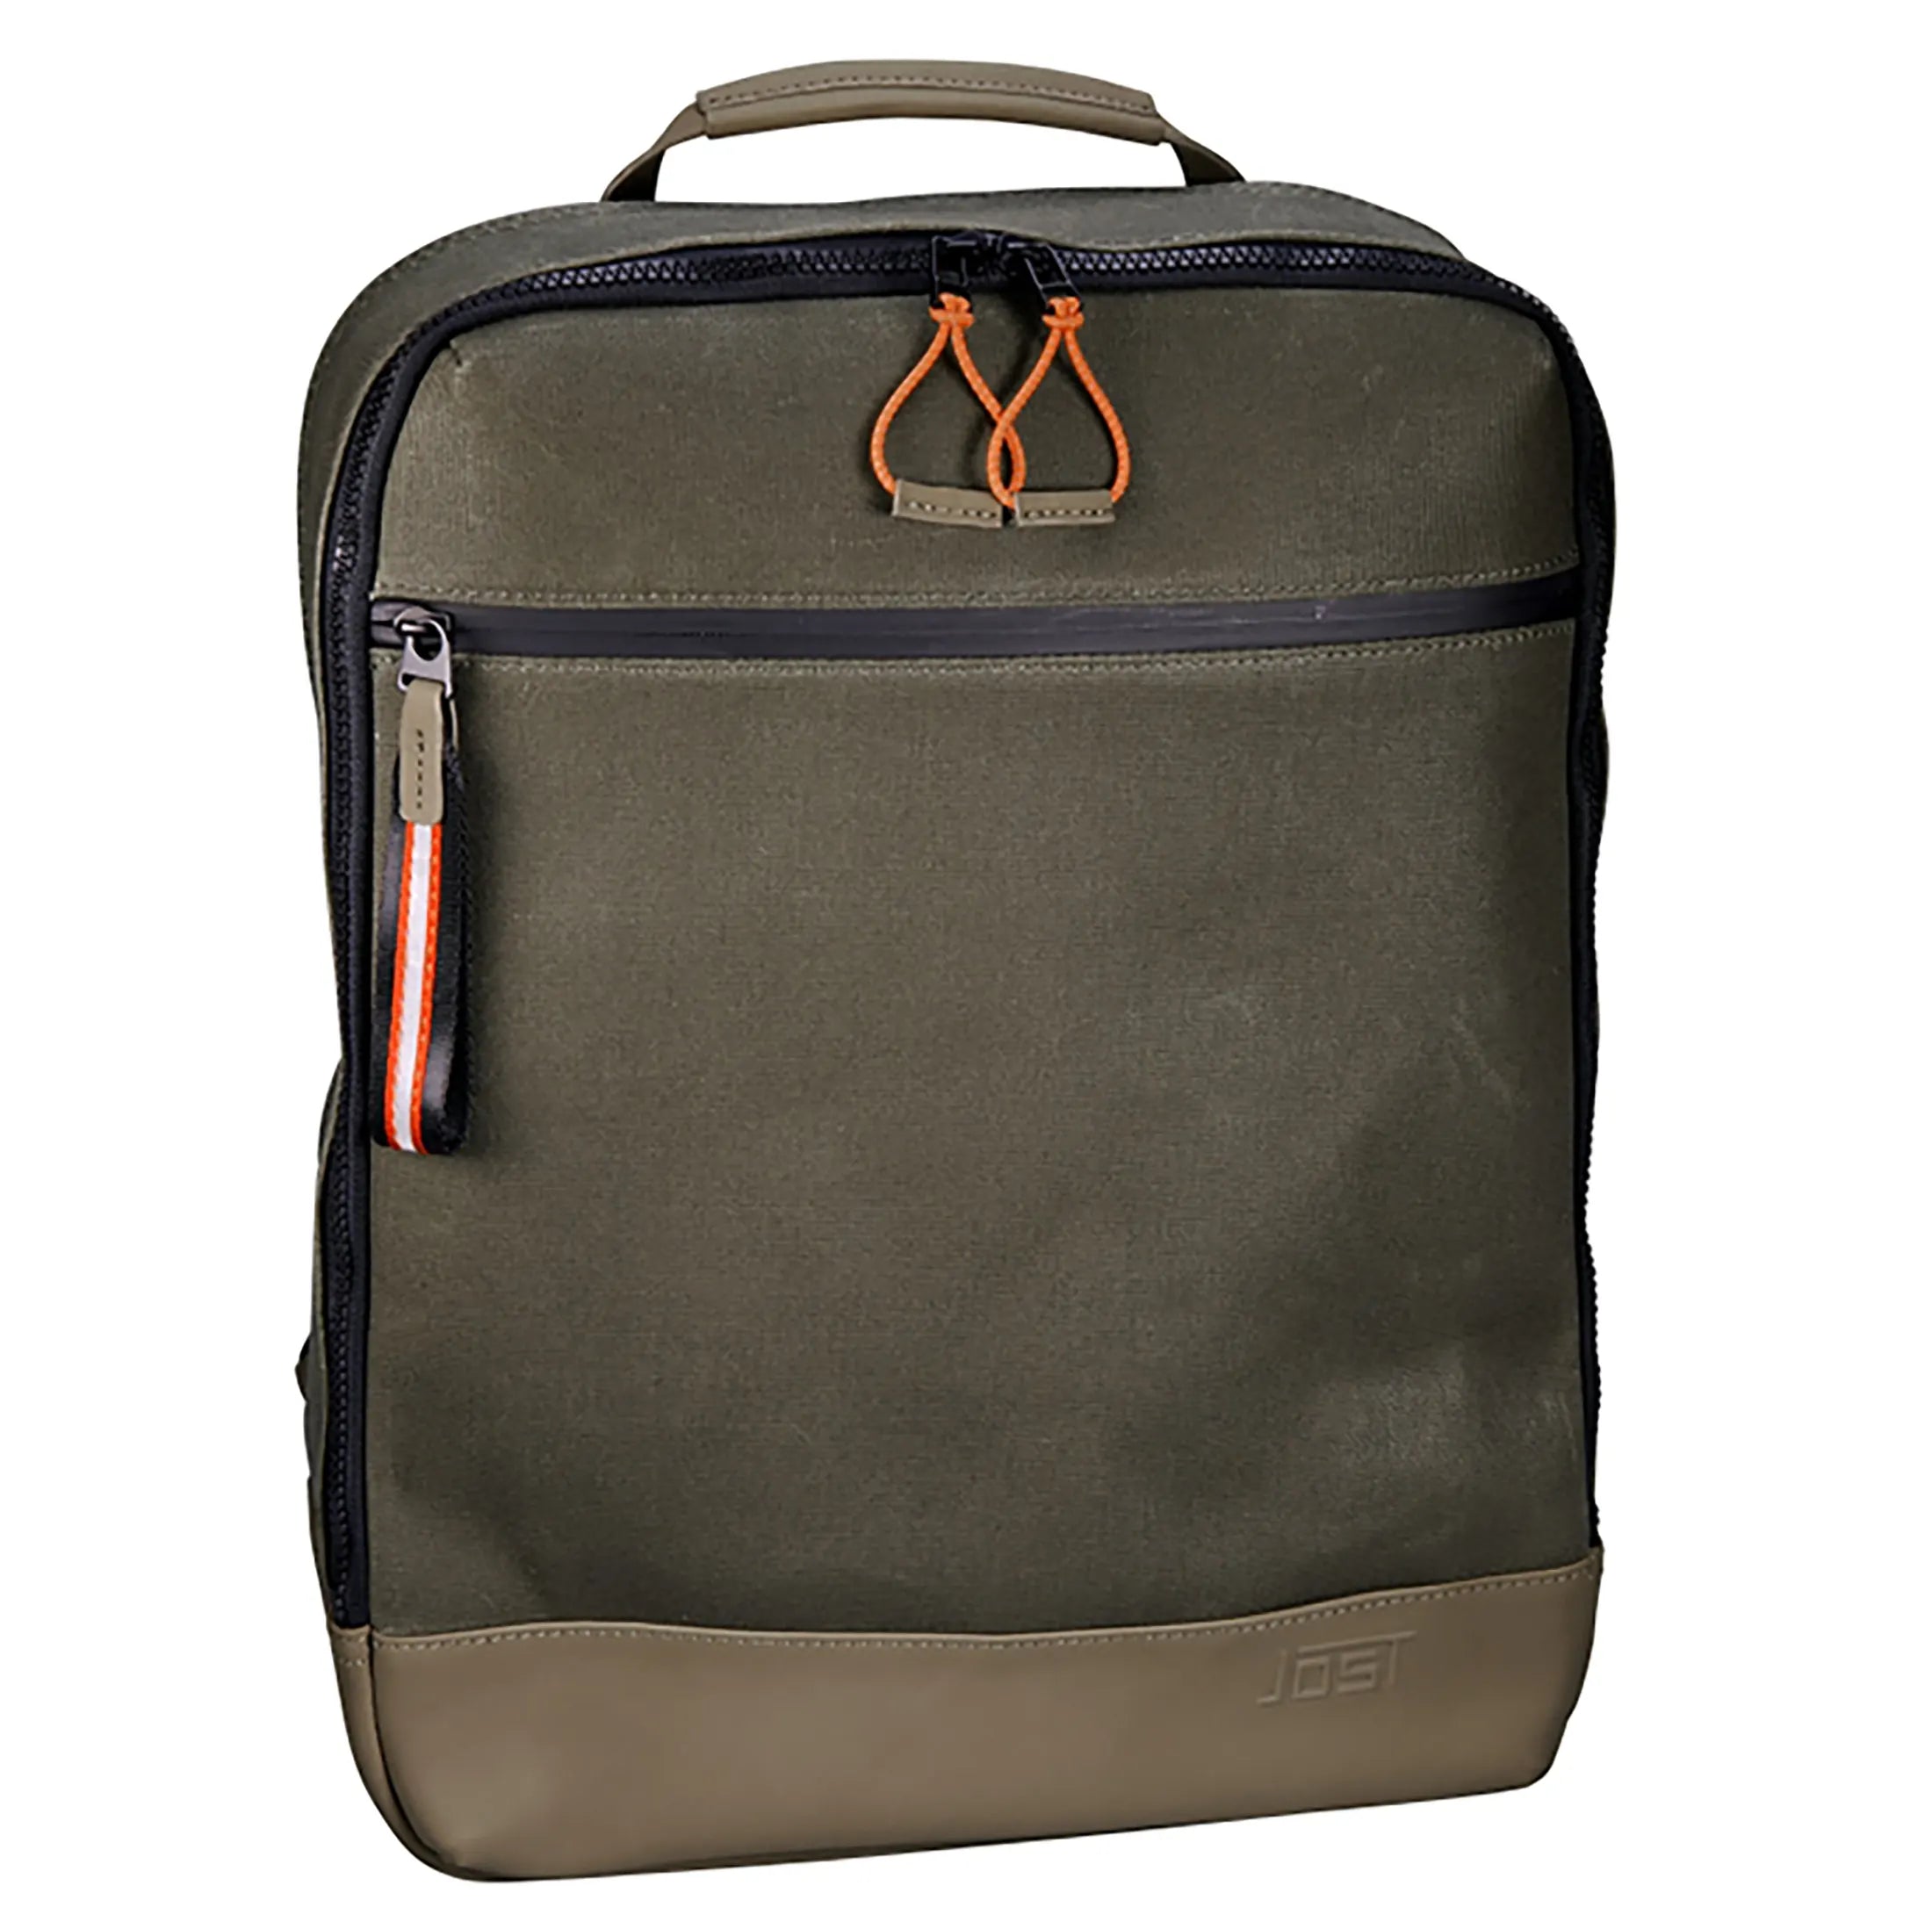 Jost Ystad Daypack-Rucksack mit Laptopfach 44 cm - olive